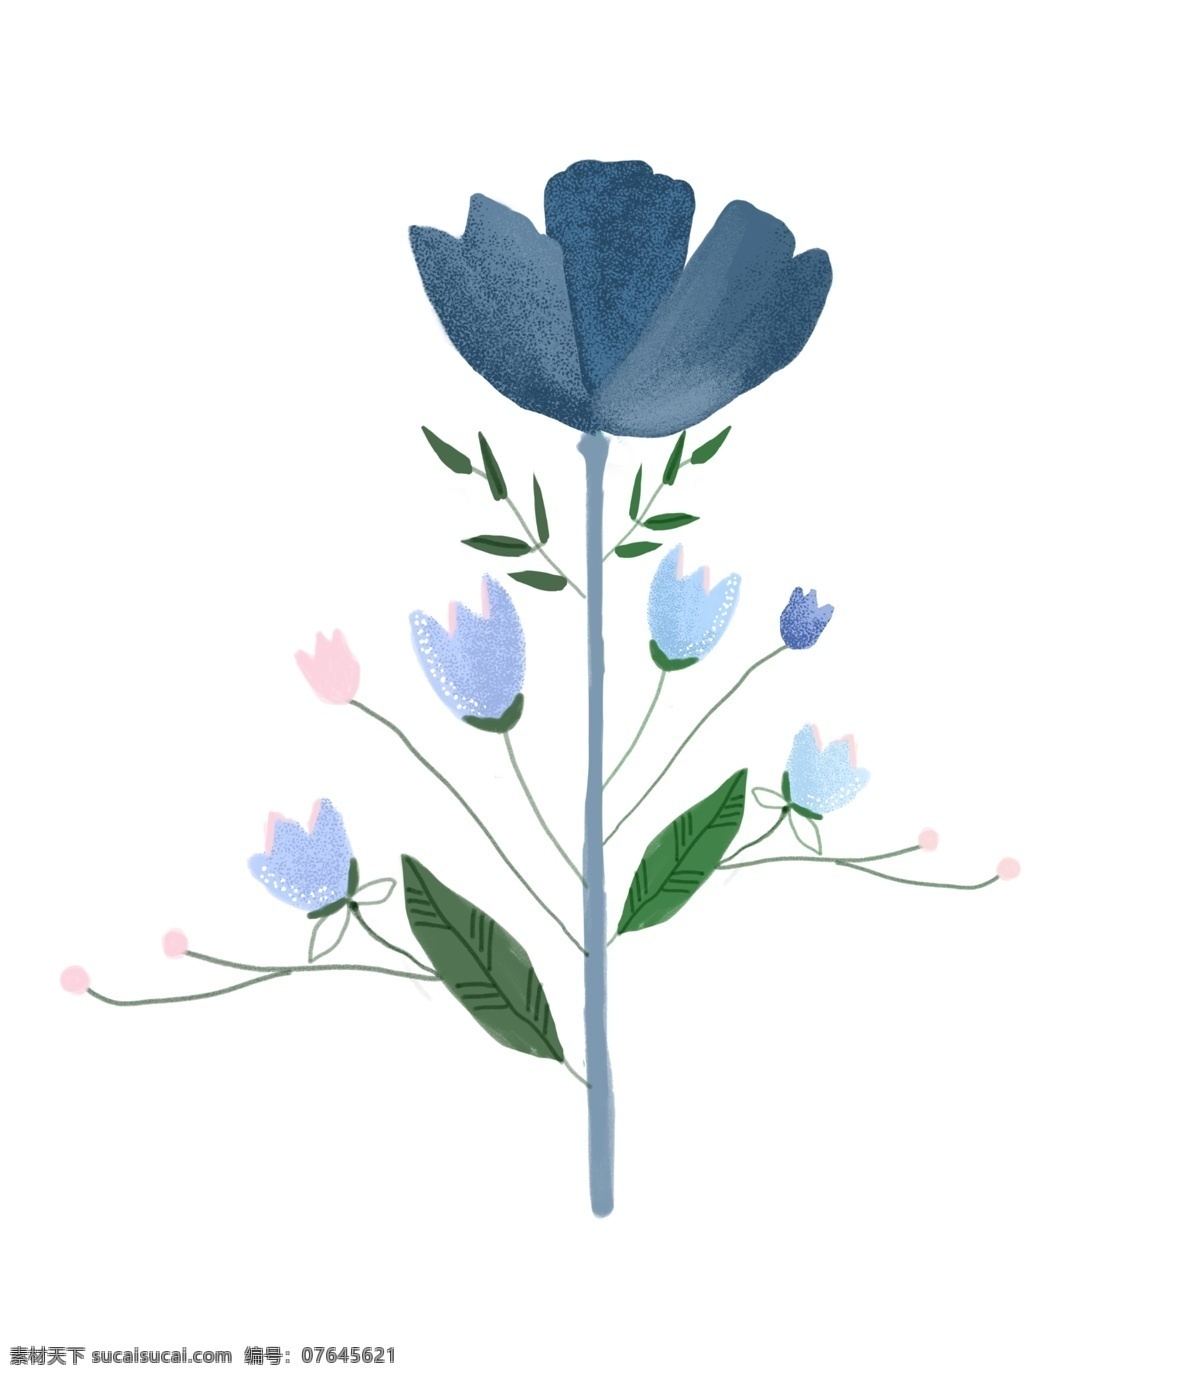 蓝色 花朵 装饰 插画 蓝色的花朵 绿色的叶子 漂亮的花朵 创意花朵 立体花朵 精美花朵 卡通花朵